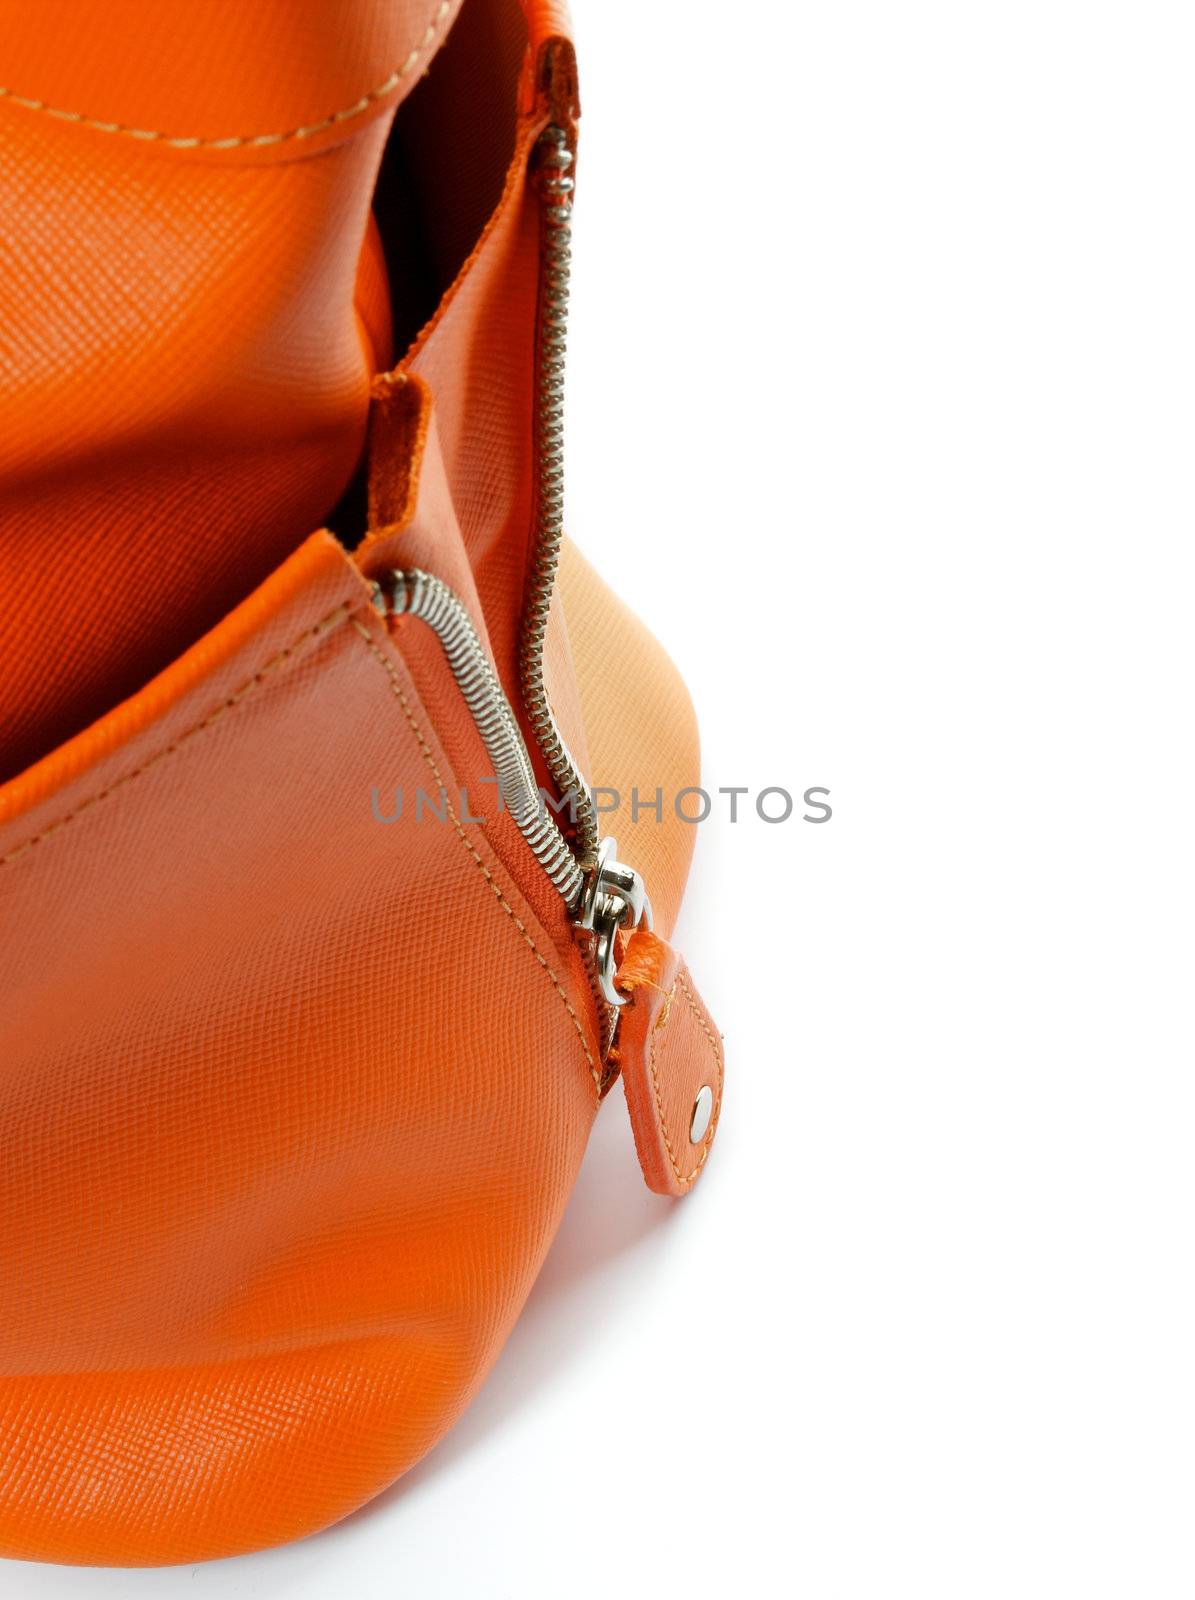 Zip of Women's Ginger Handbag  by zhekos